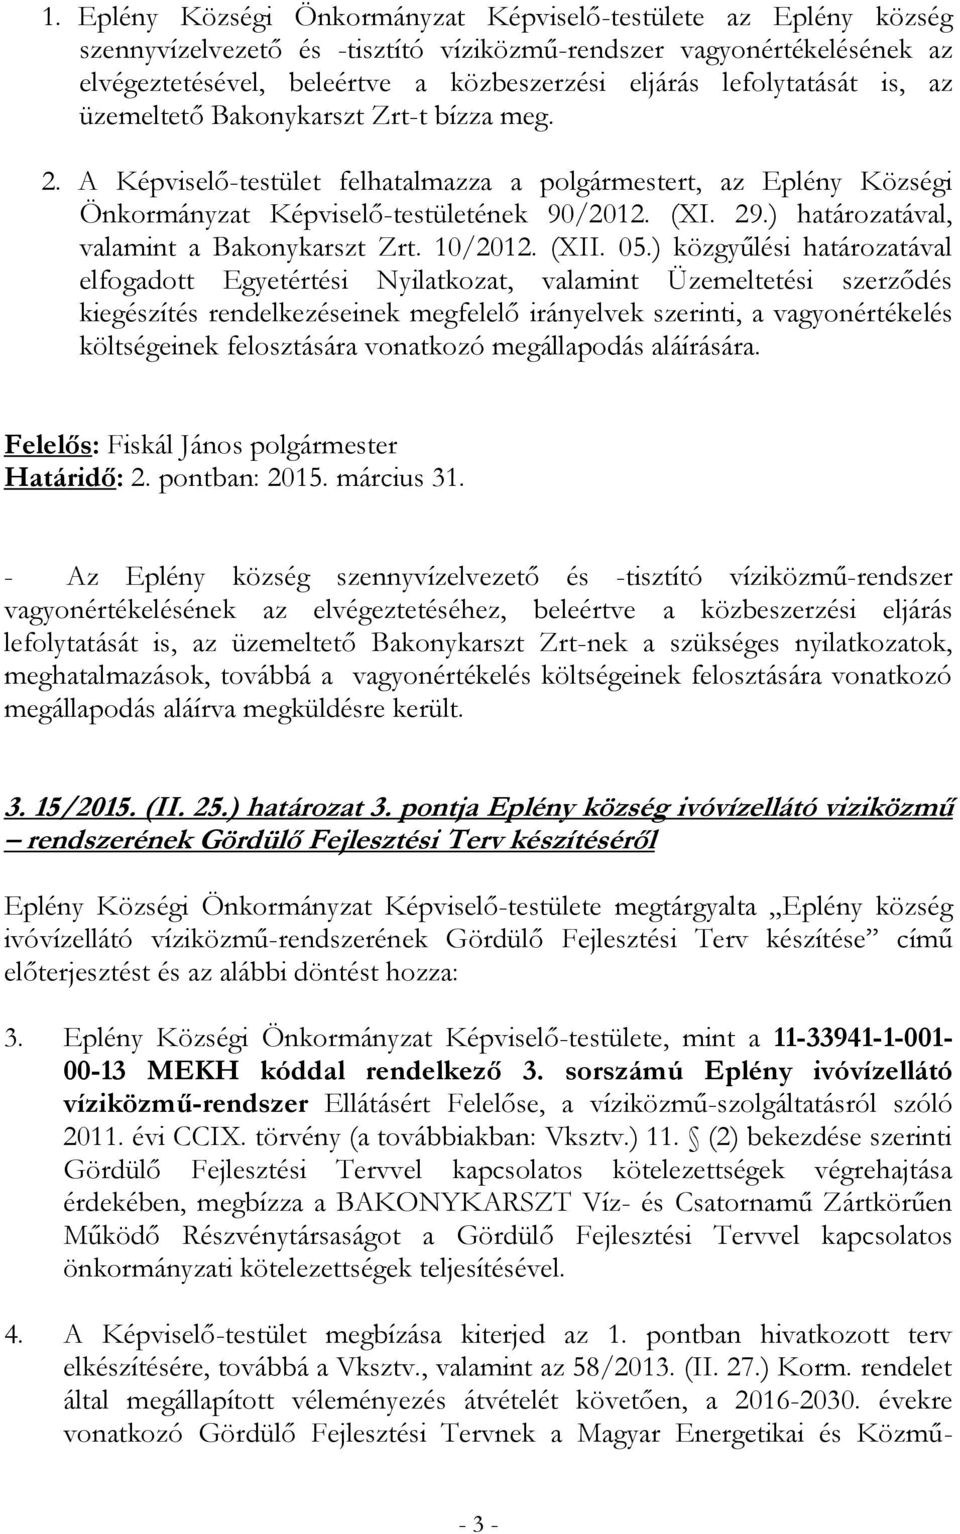 ) határozatával, valamint a Bakonykarszt Zrt. 10/2012. (XII. 05.